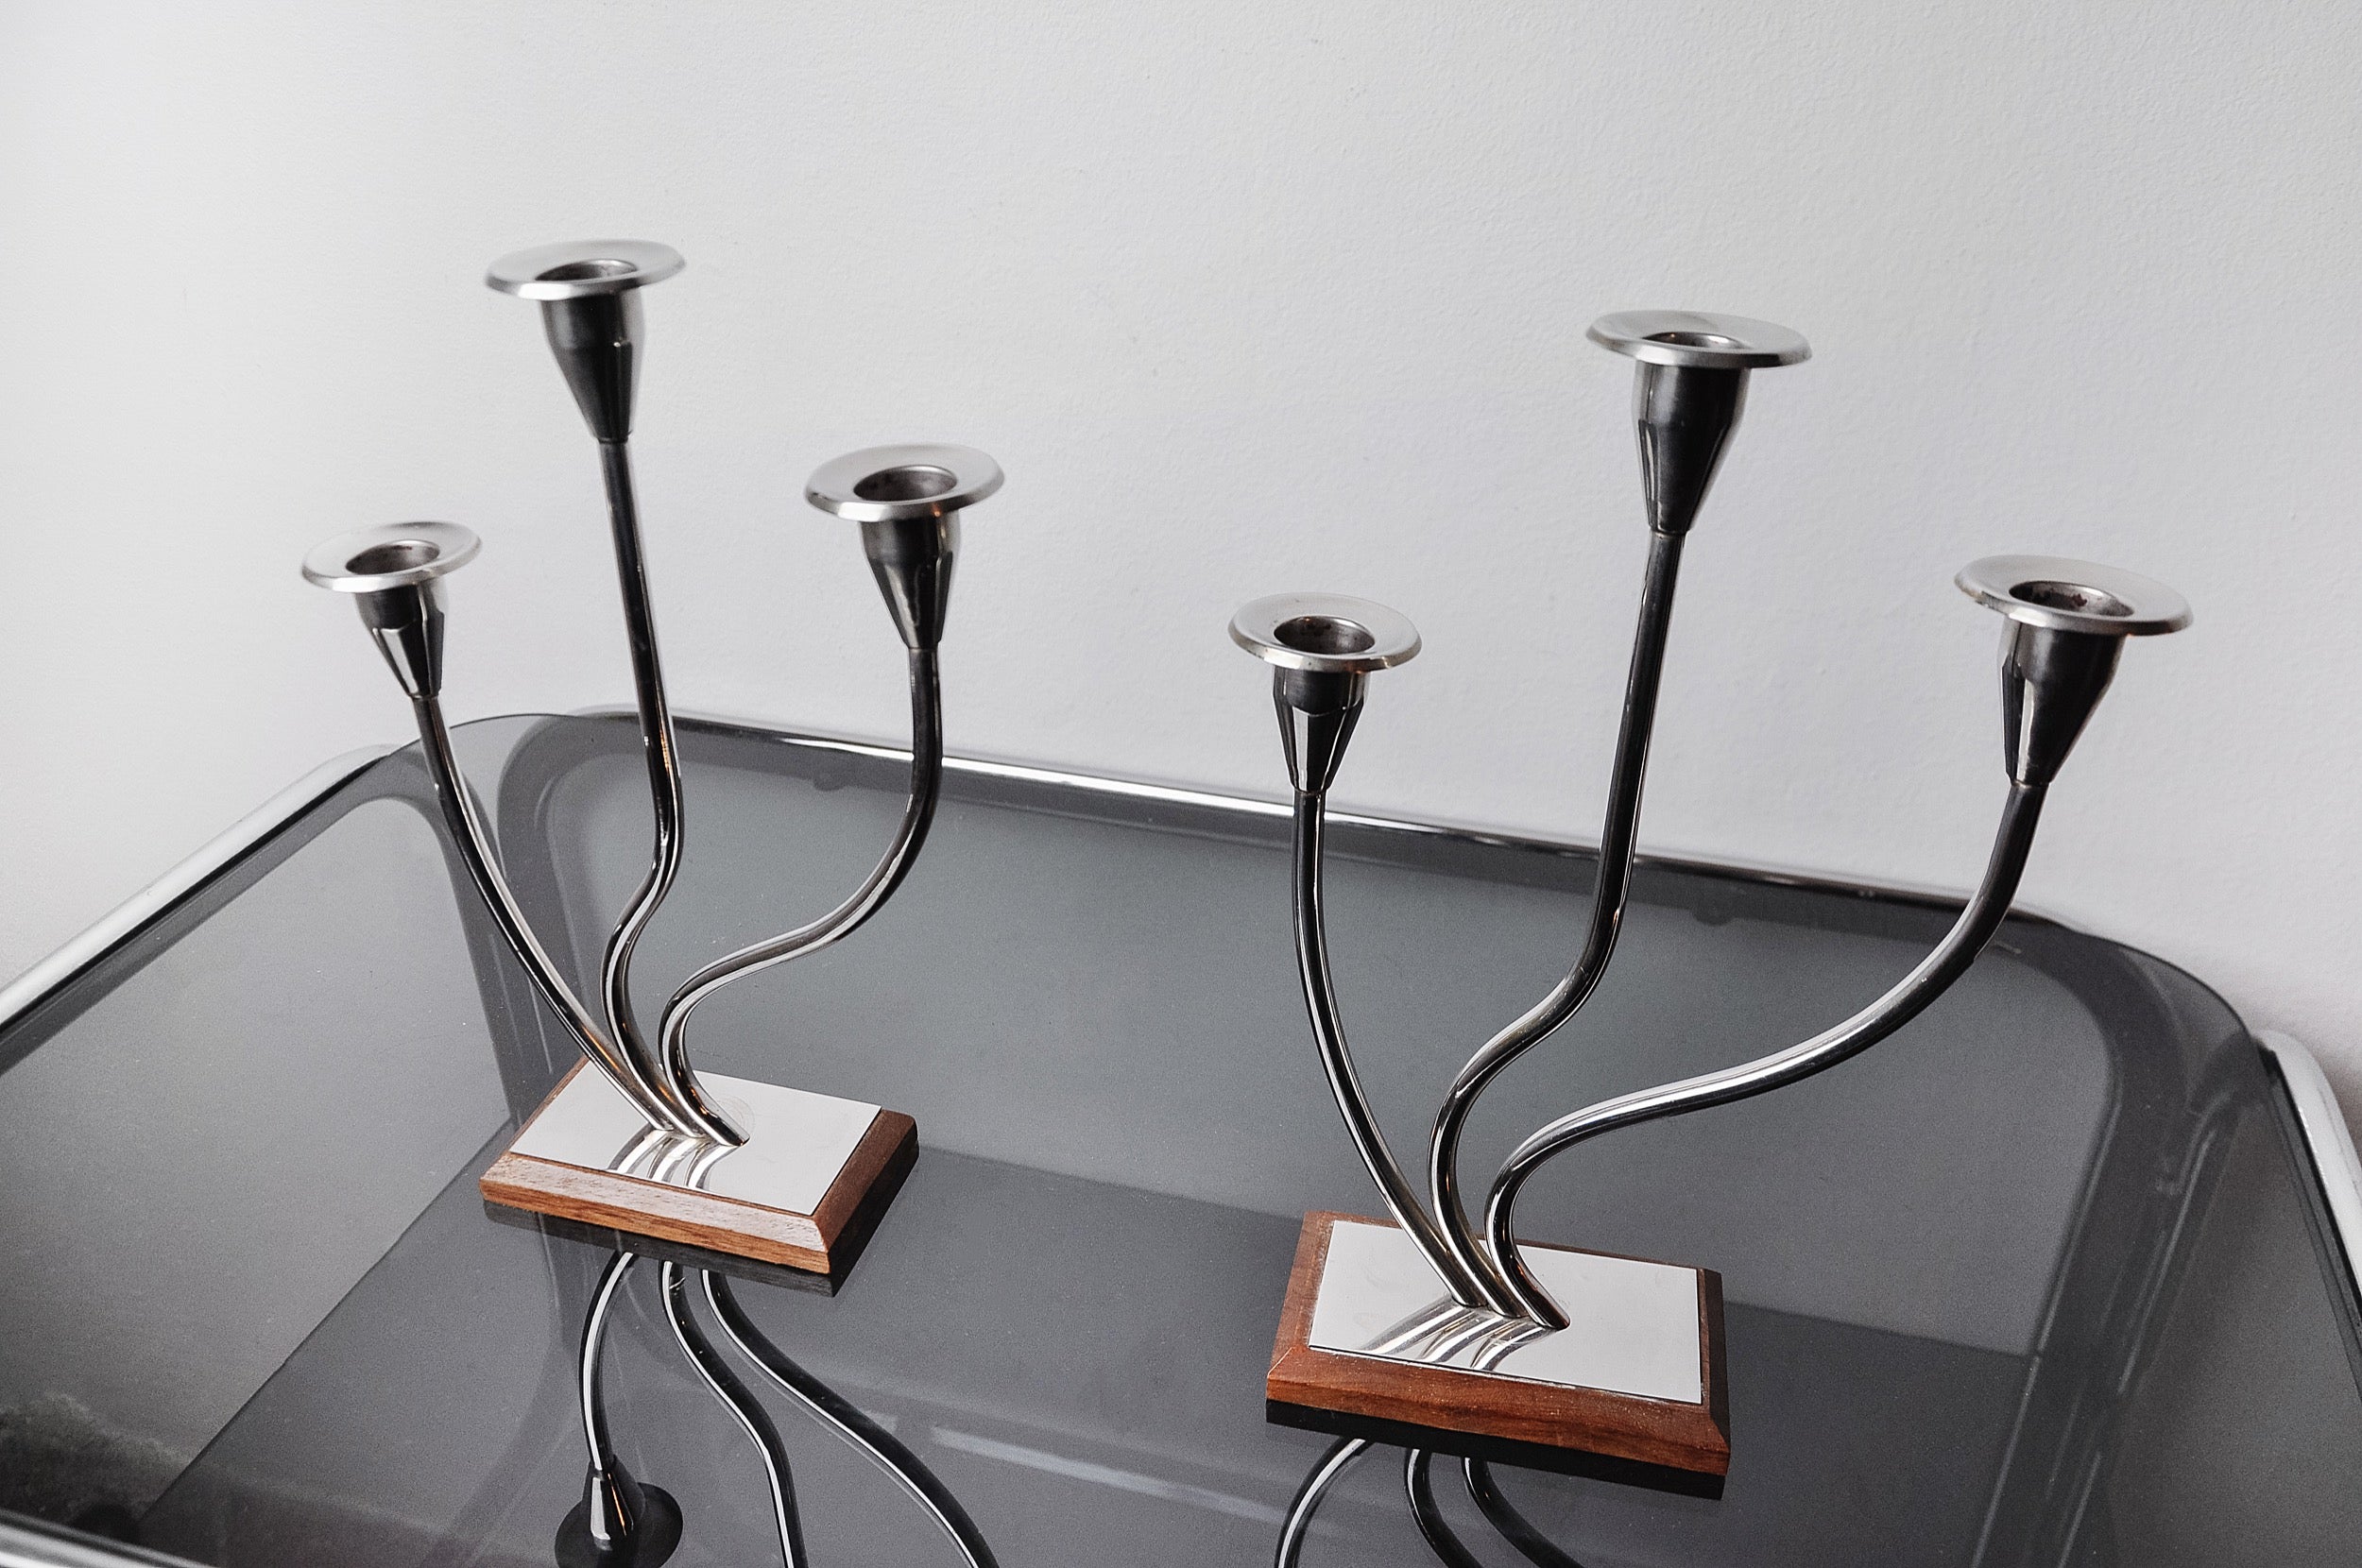 Sehr schönes Paar Art-Deco-Kerzenhalter aus rostfreiem Stahl, die in den 1970er Jahren in Spanien hergestellt wurden. Struktur aus rostfreiem Stahl 18/8, die 3 Kerzen aufnehmen kann. Ein wunderschönes Designobjekt, das Ihr Interieur auf wunderbare